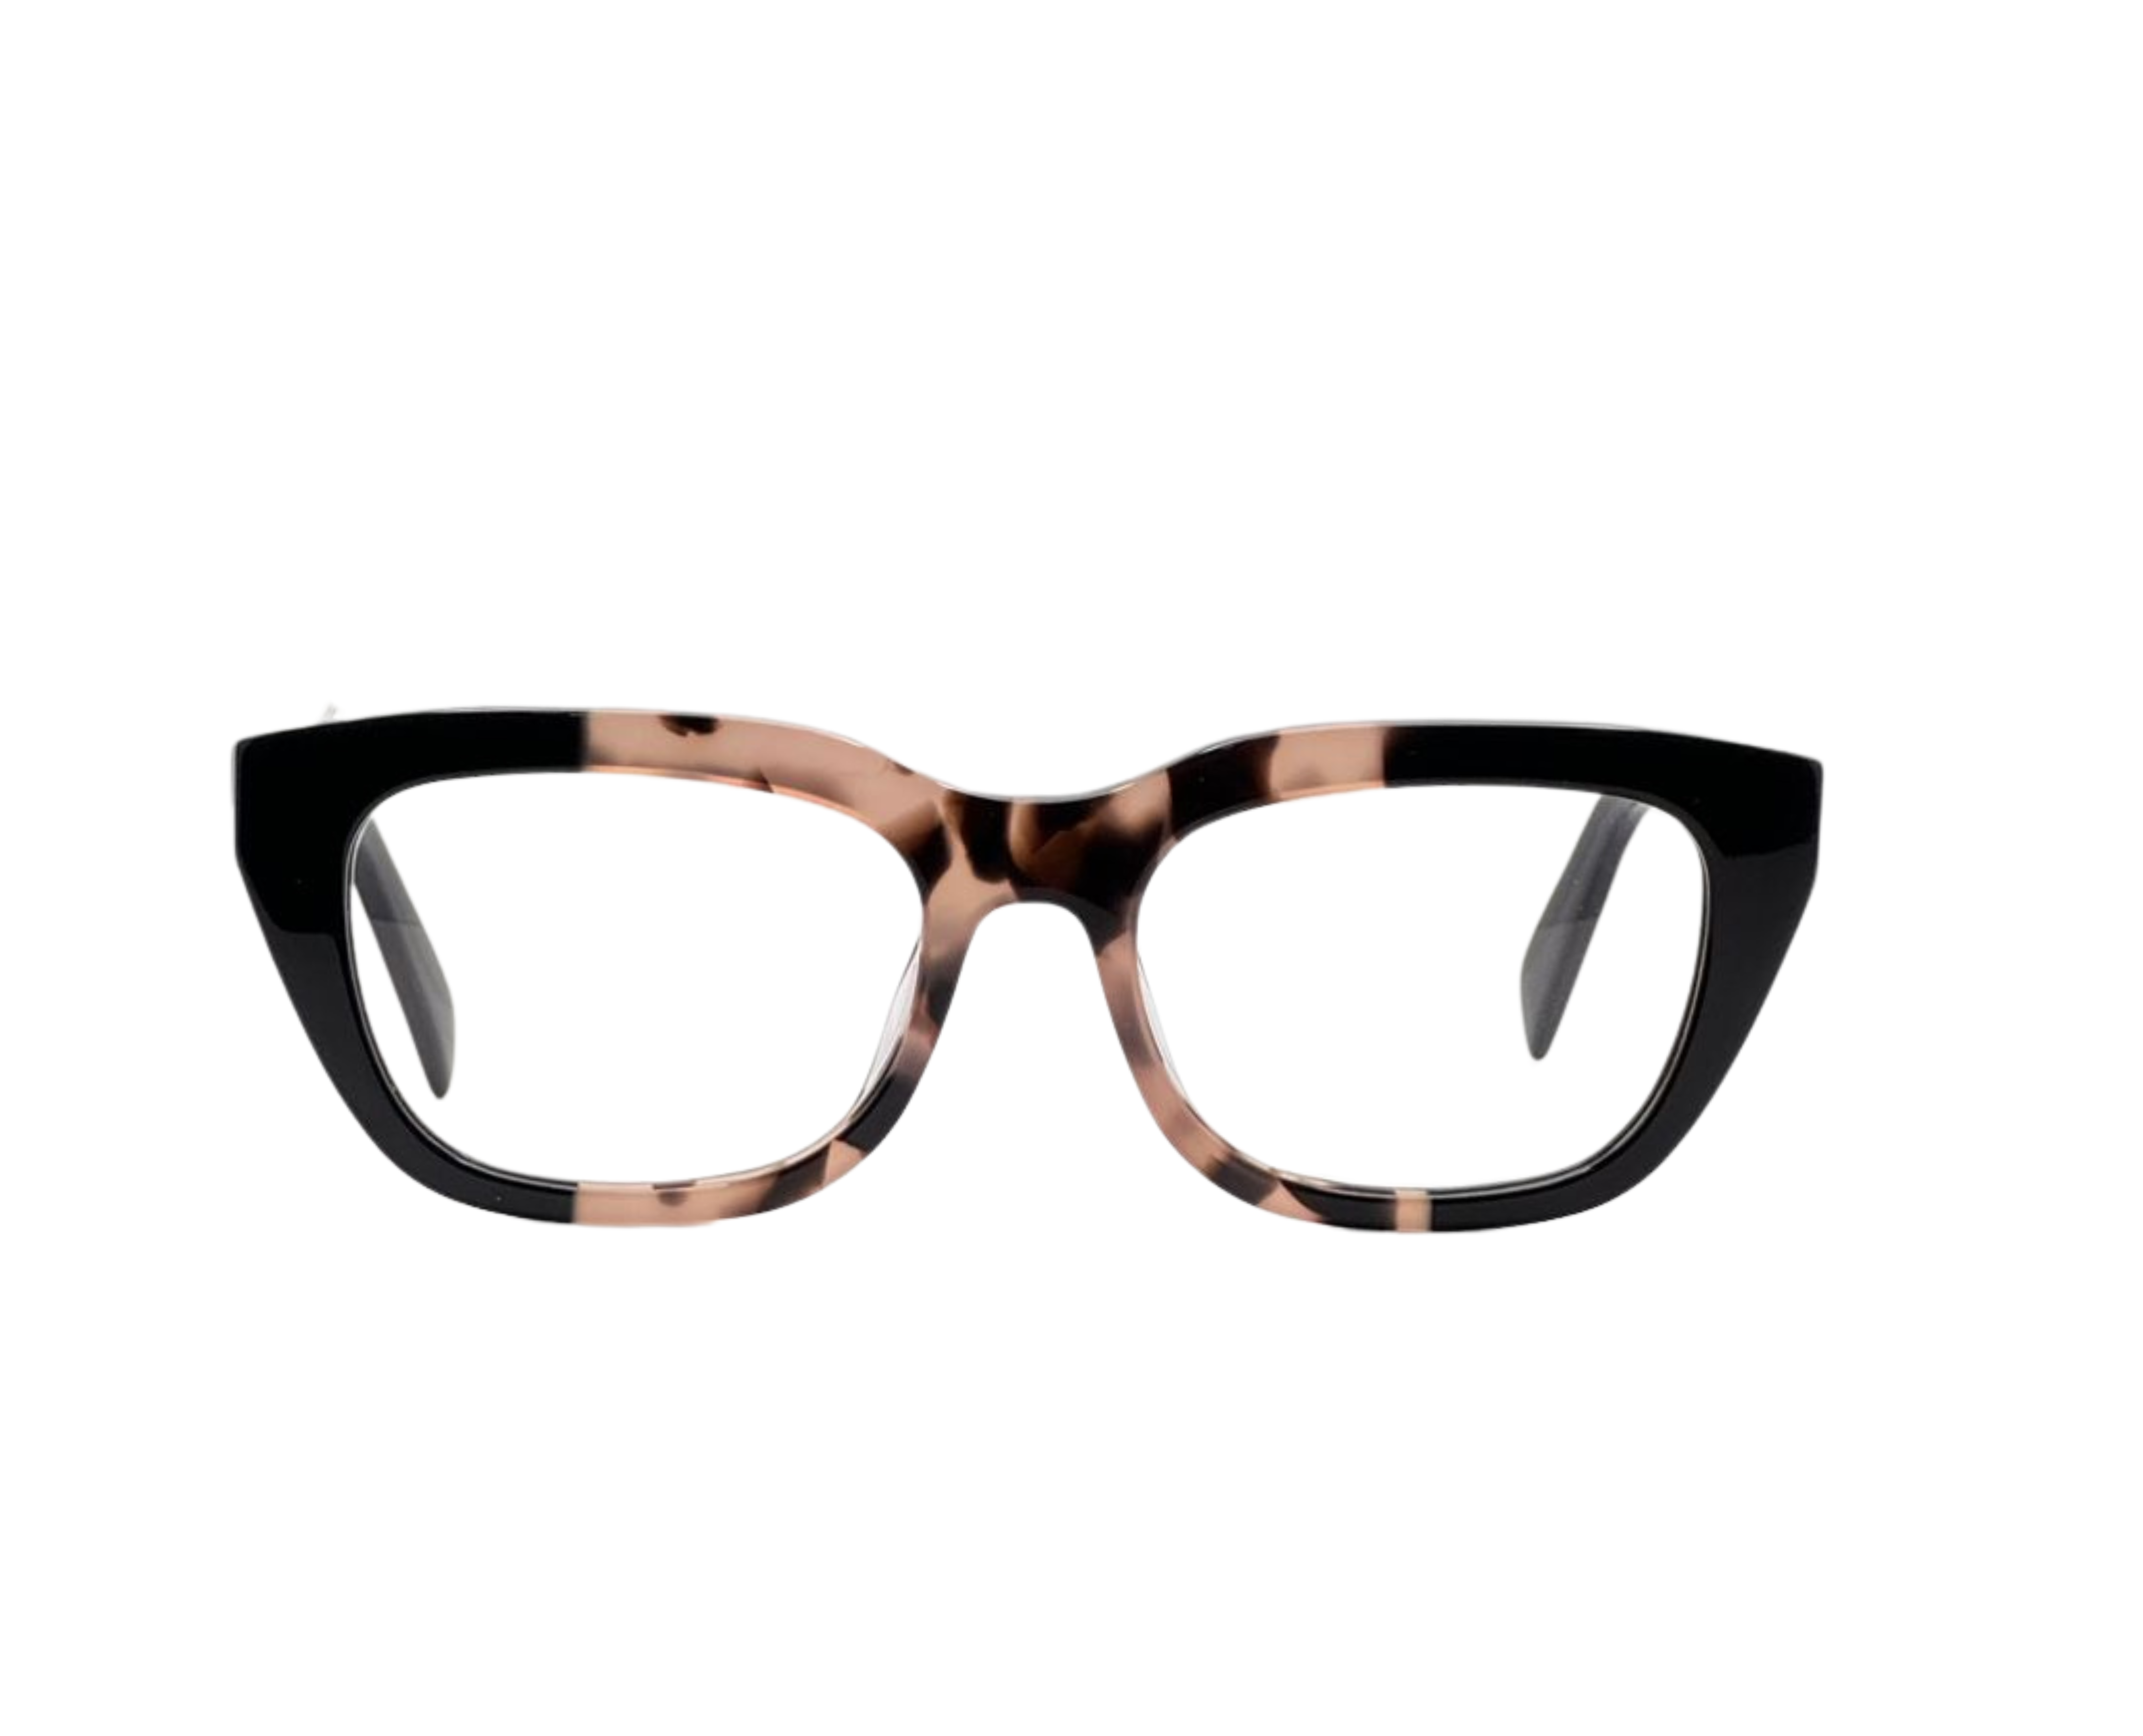 NS Luxury - J12 - Black Tortoise - Eyeglasses